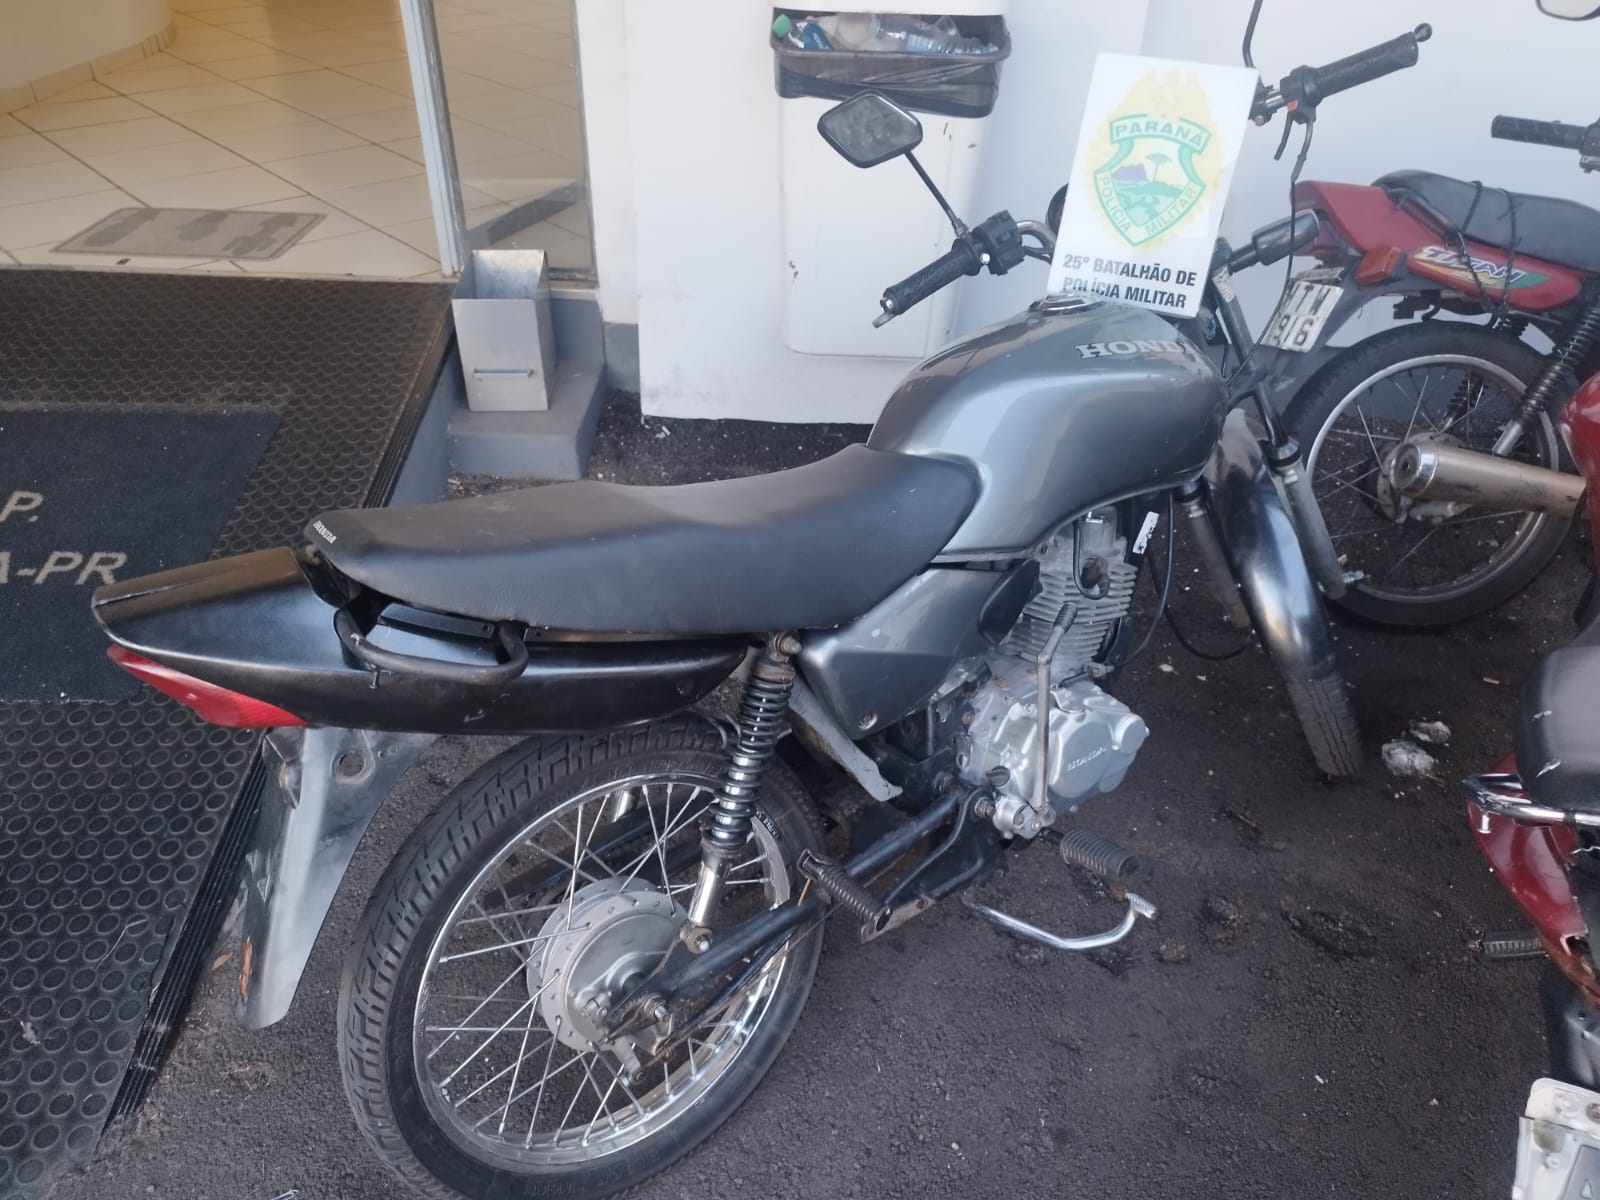 Jornal Ilustrado - Motocicleta furtada é recuperada pela PM no parque Industrial, em Umuarama 